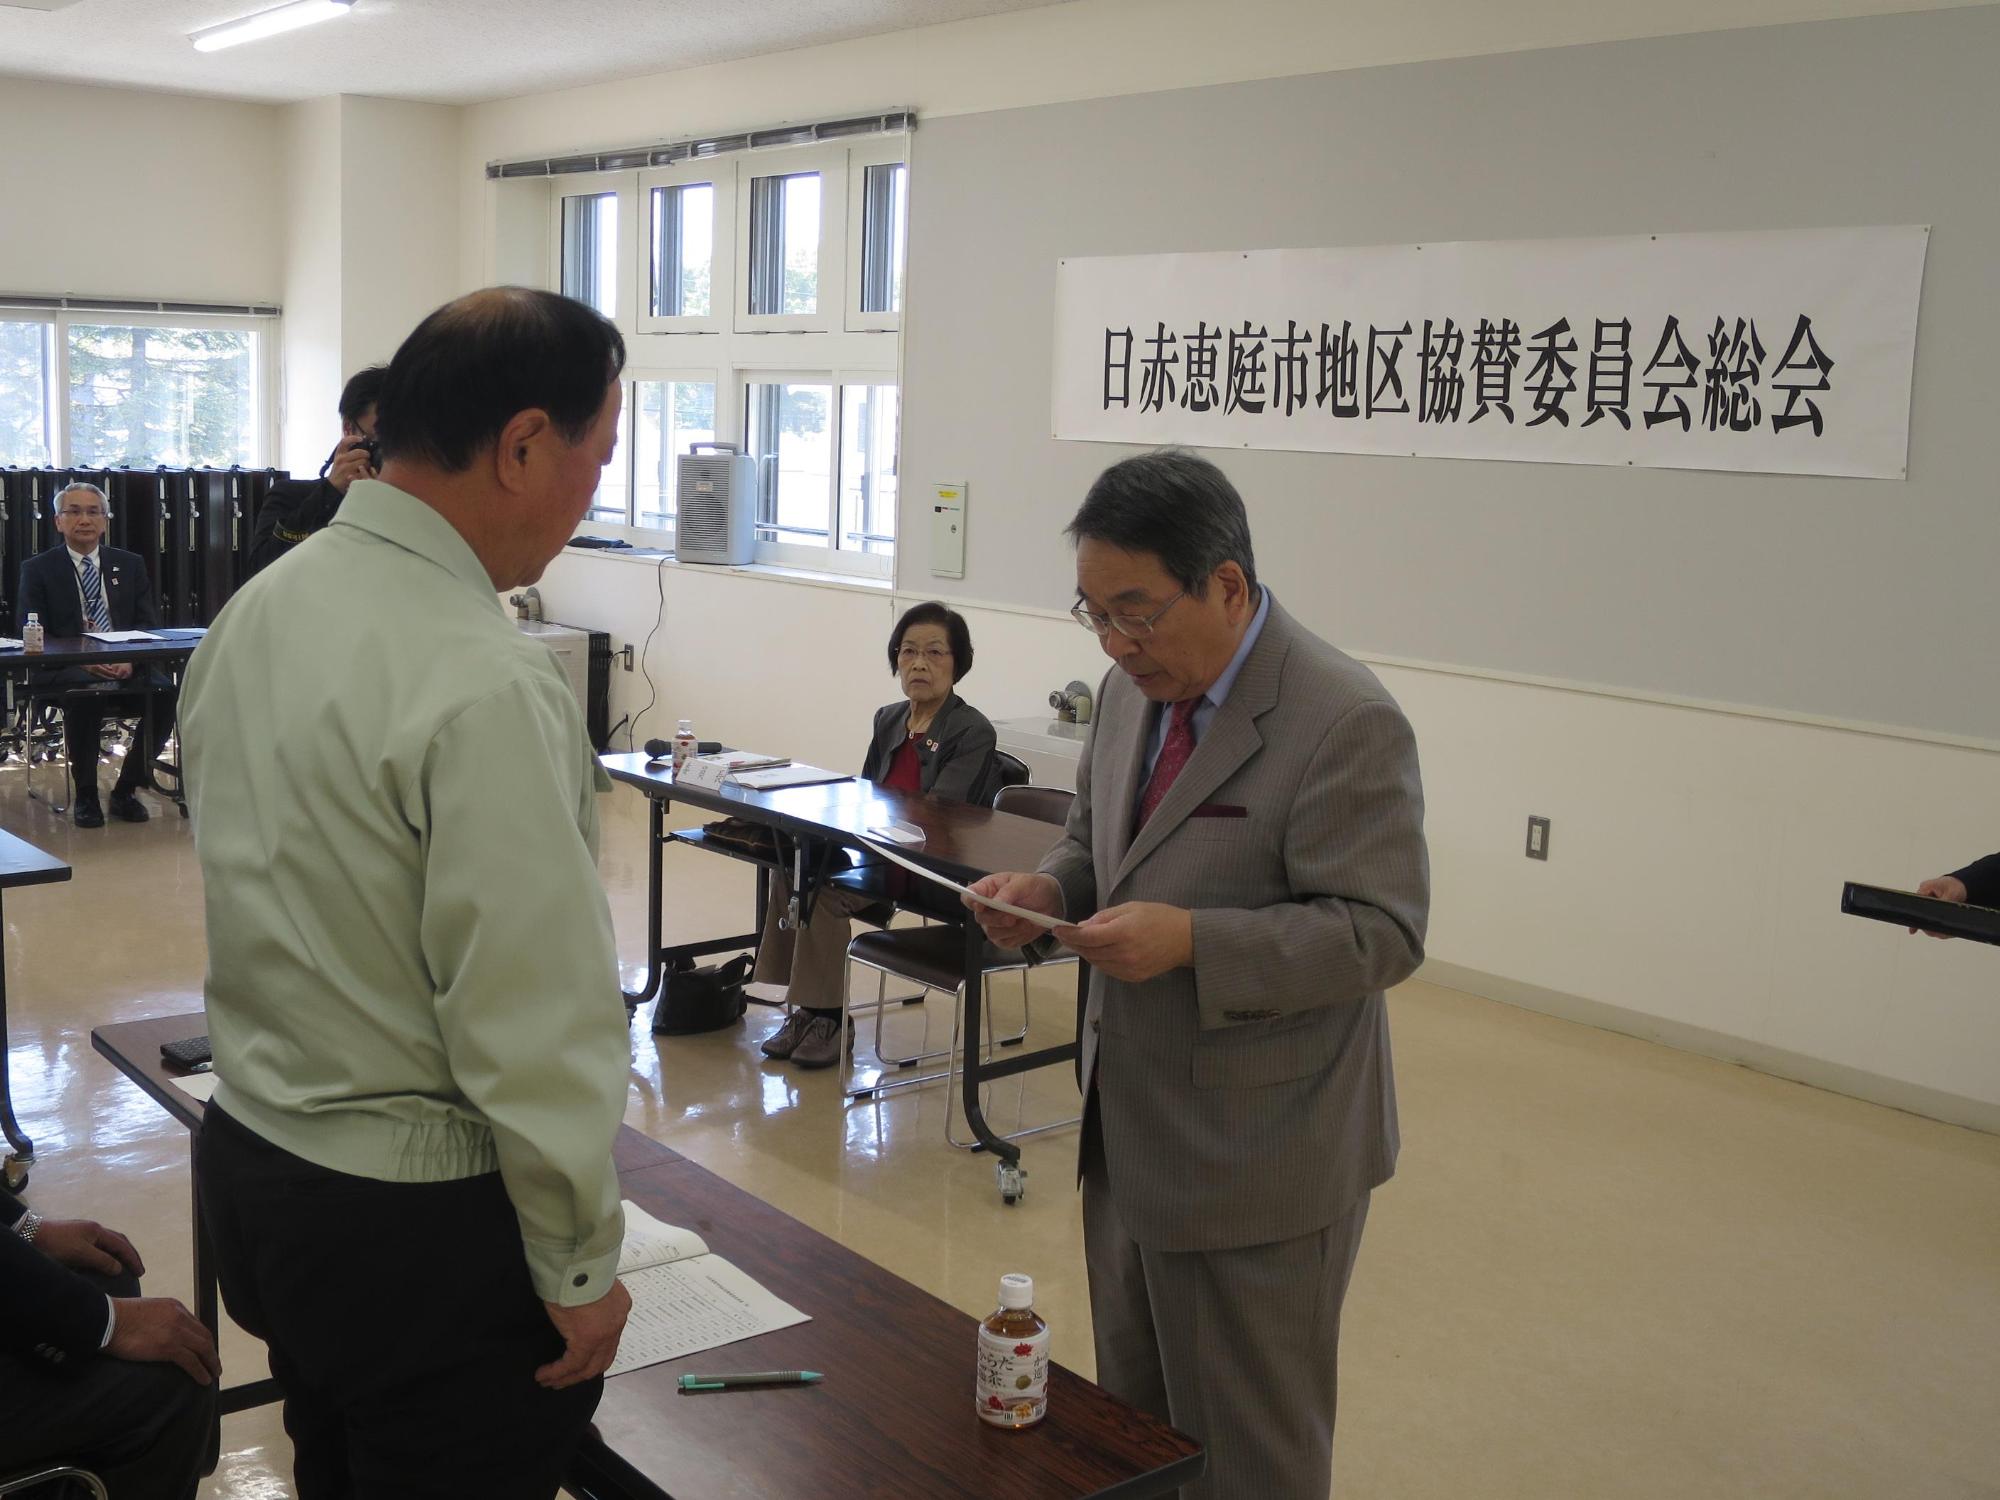 新役員へ委任状を交付している原田市長の写真